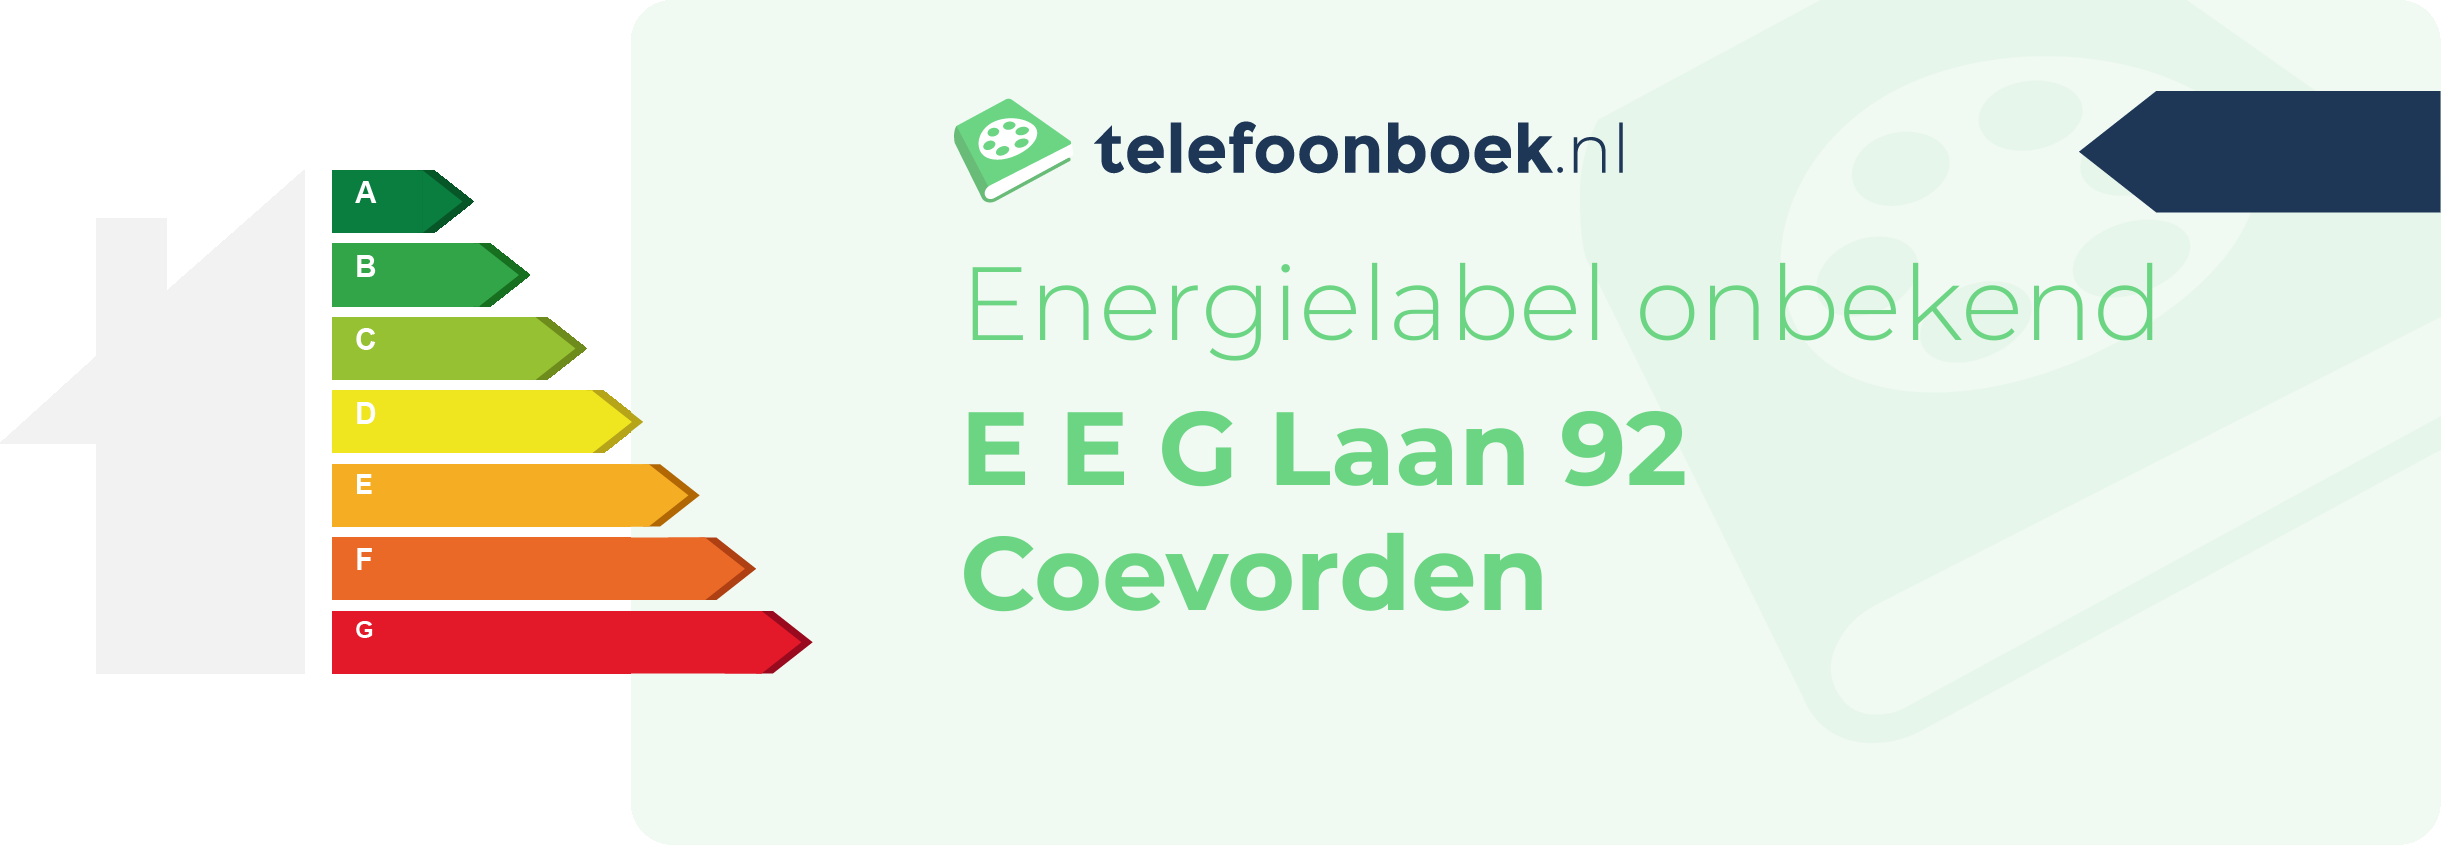 Energielabel E E G Laan 92 Coevorden